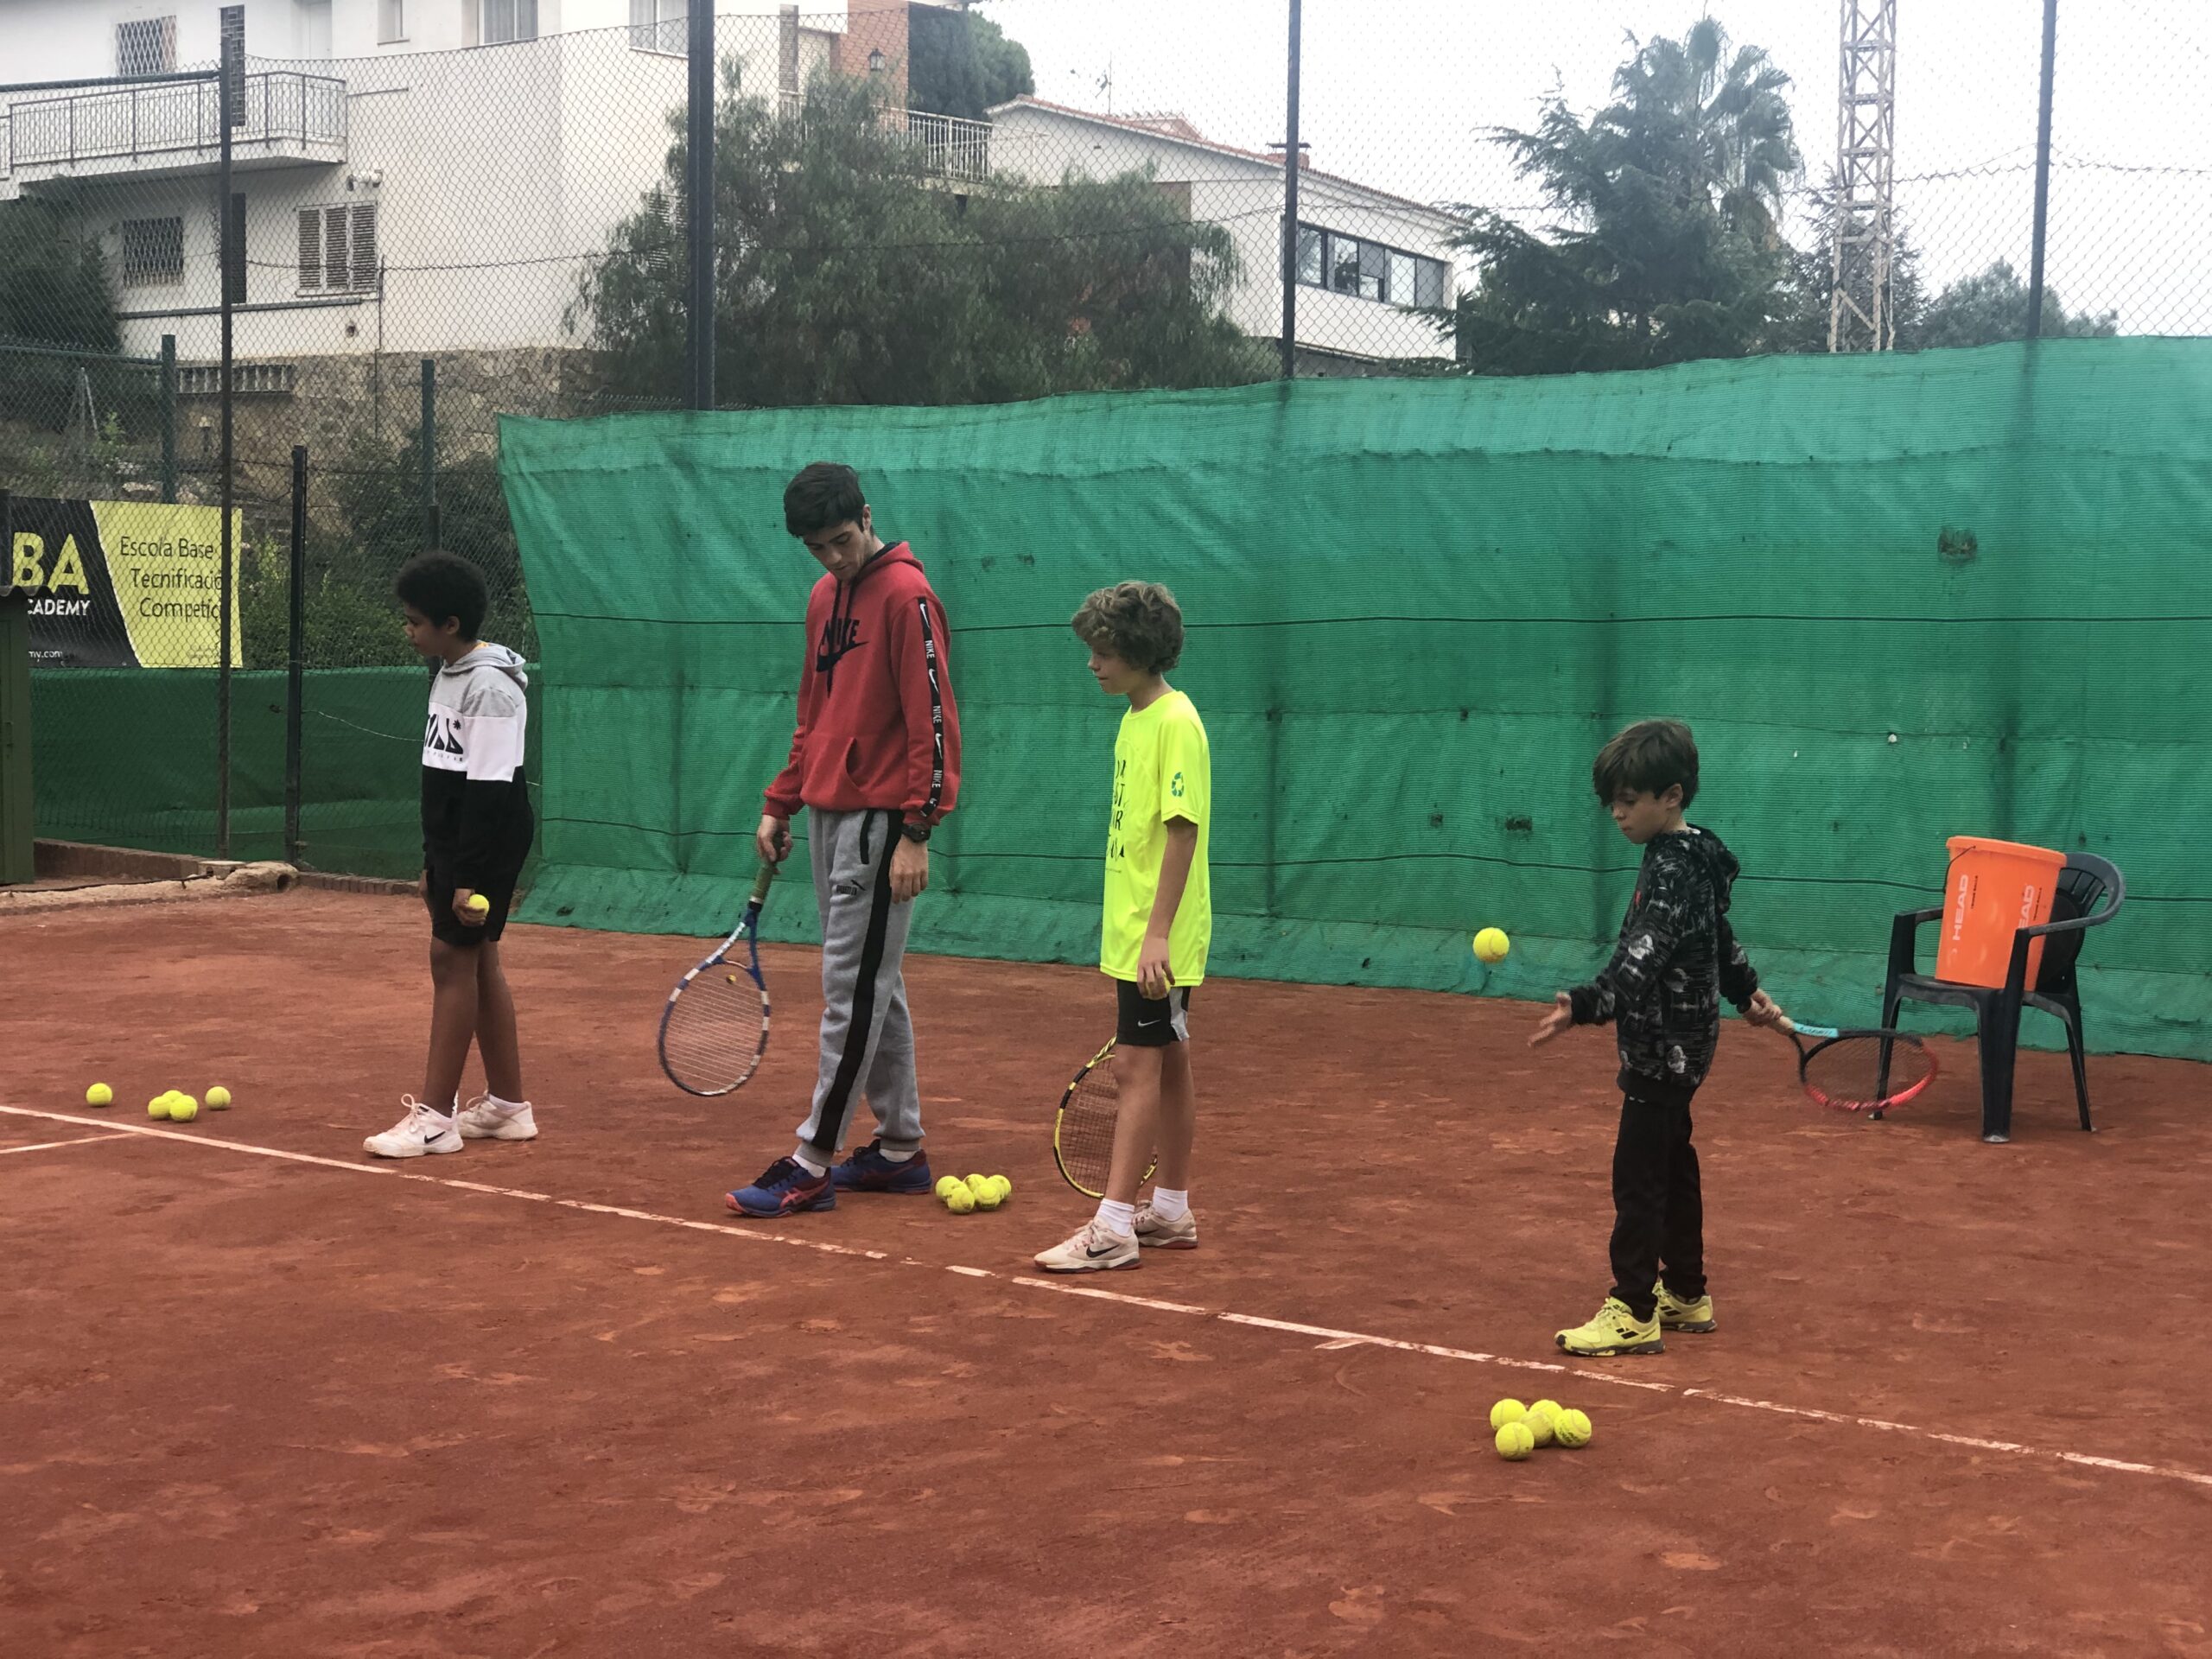 MBA-Tennis-Academy- El saque (8)